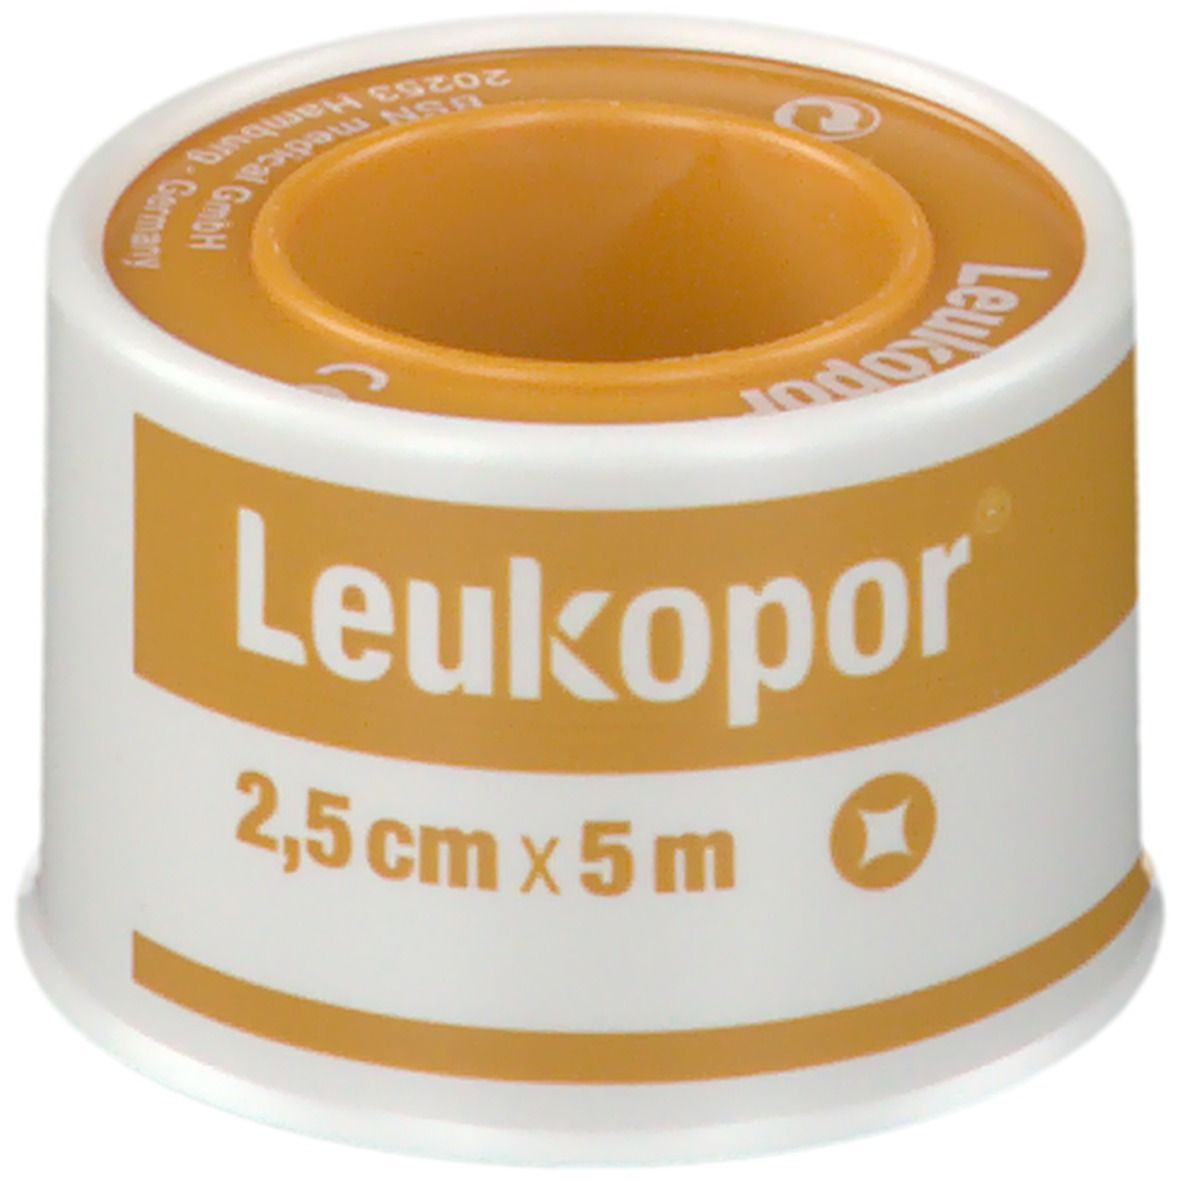 Leukopor® 2,5 cm x 5 m